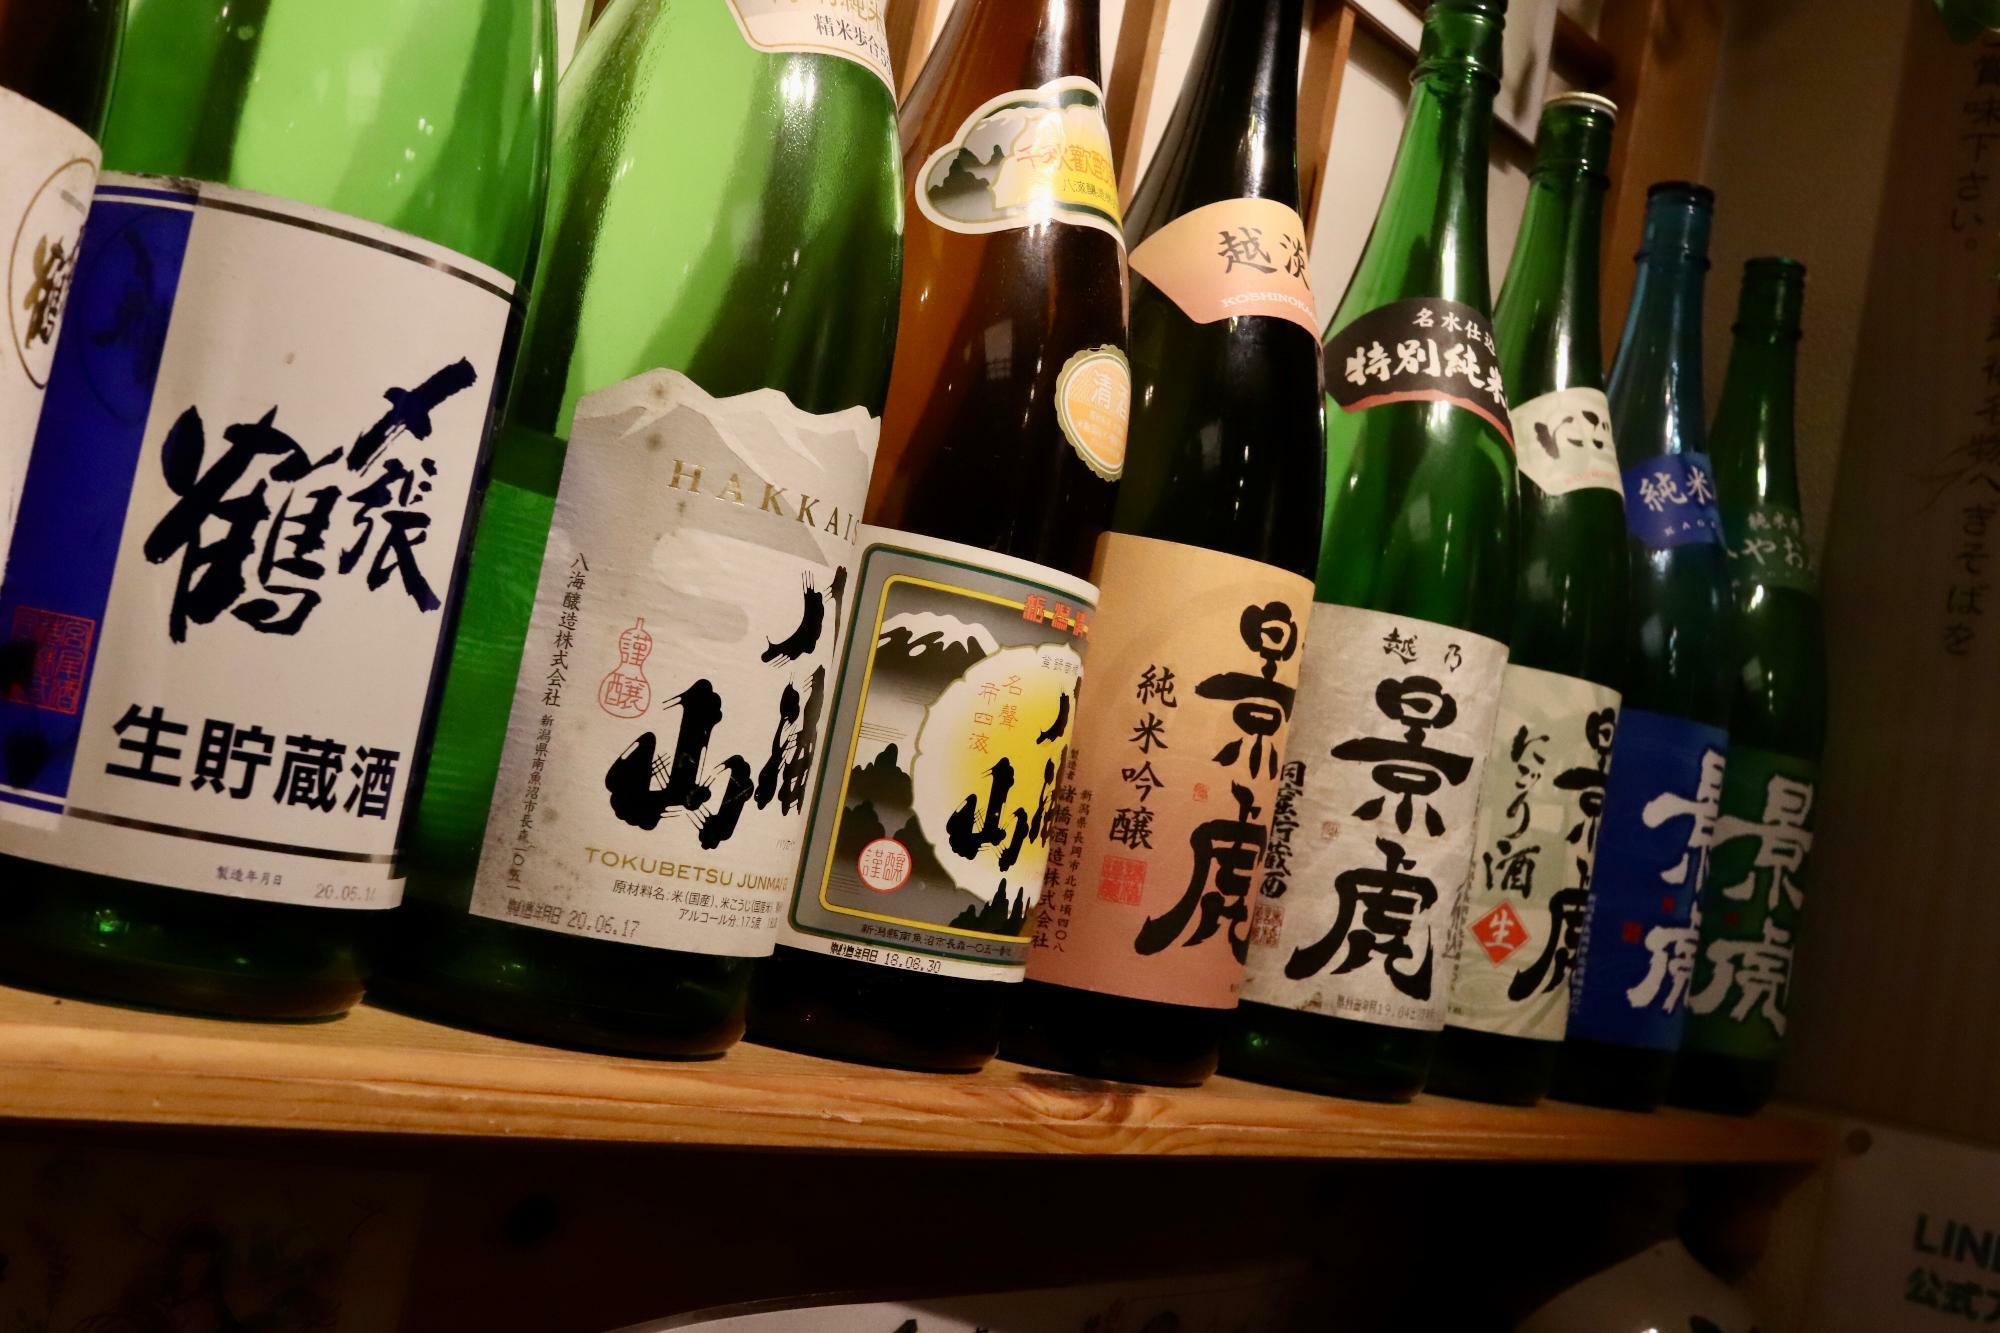 新潟の地酒のビンが並びます